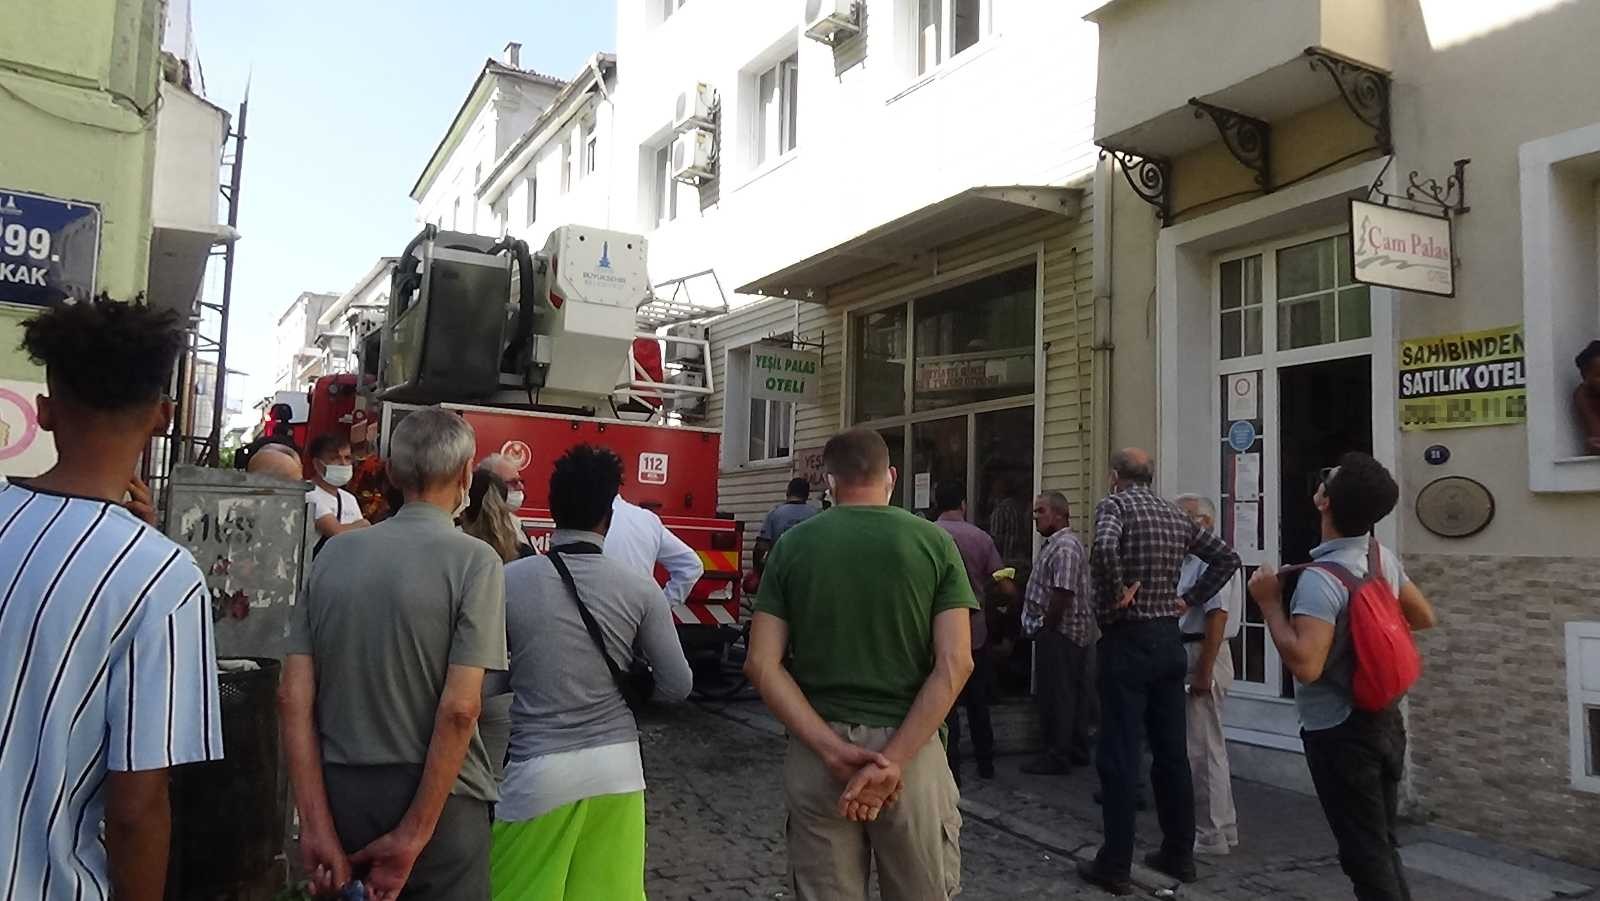 İzmir’de otelde yangın: 3 kişi dumandan etkilendi #izmir